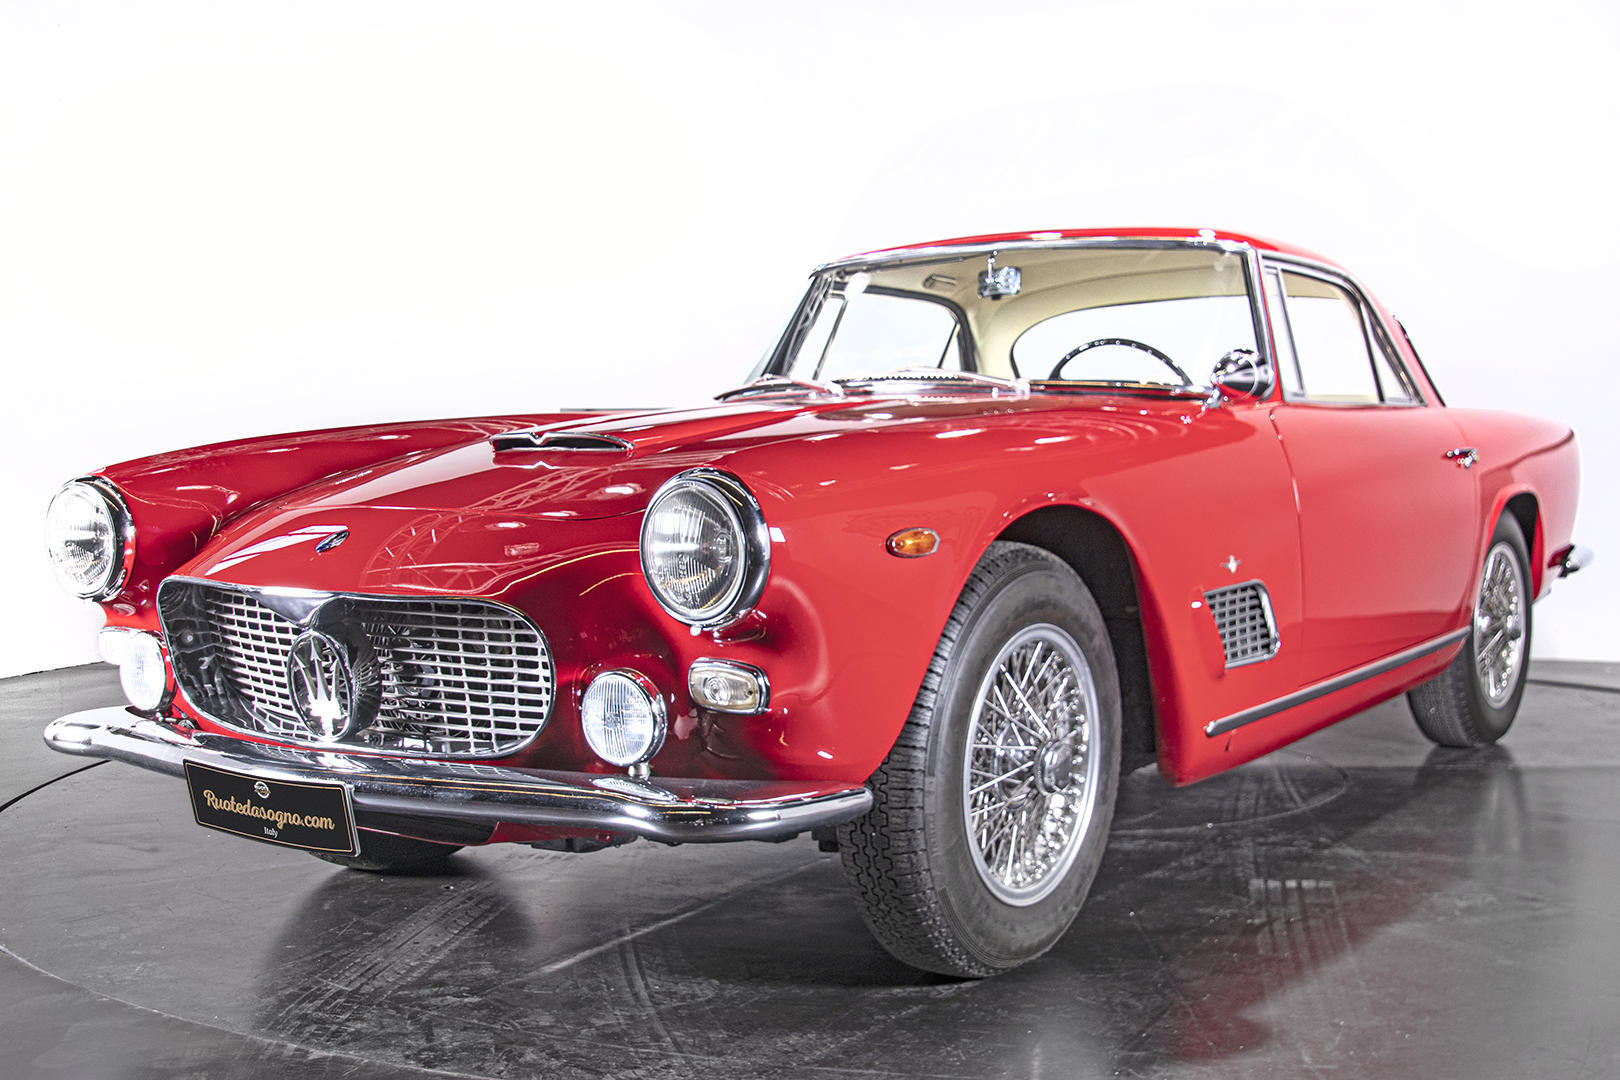 1964 MASERATI 3500 GTi - Maserati - Classic cars - Ruote da Sogno